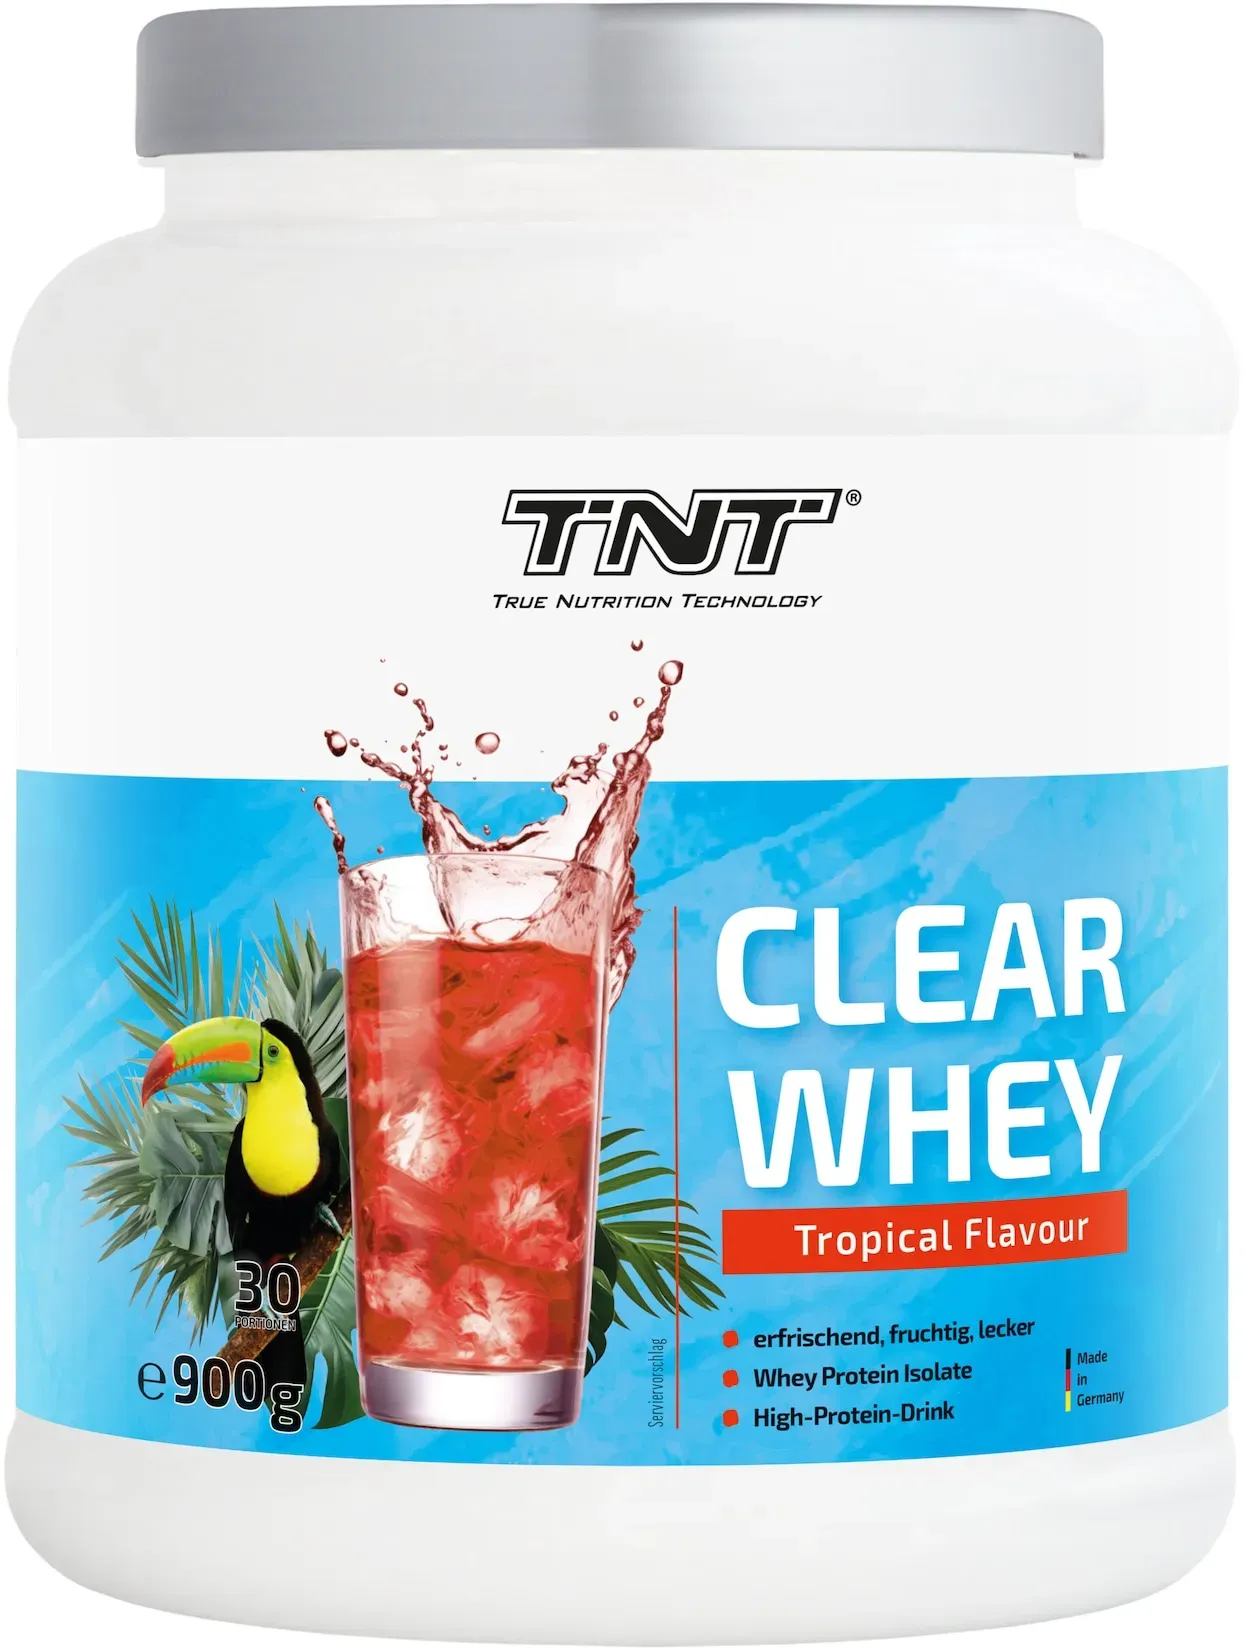 TNT Clear Whey Protein Shake Isolate lecker(er) wie ein Eistee